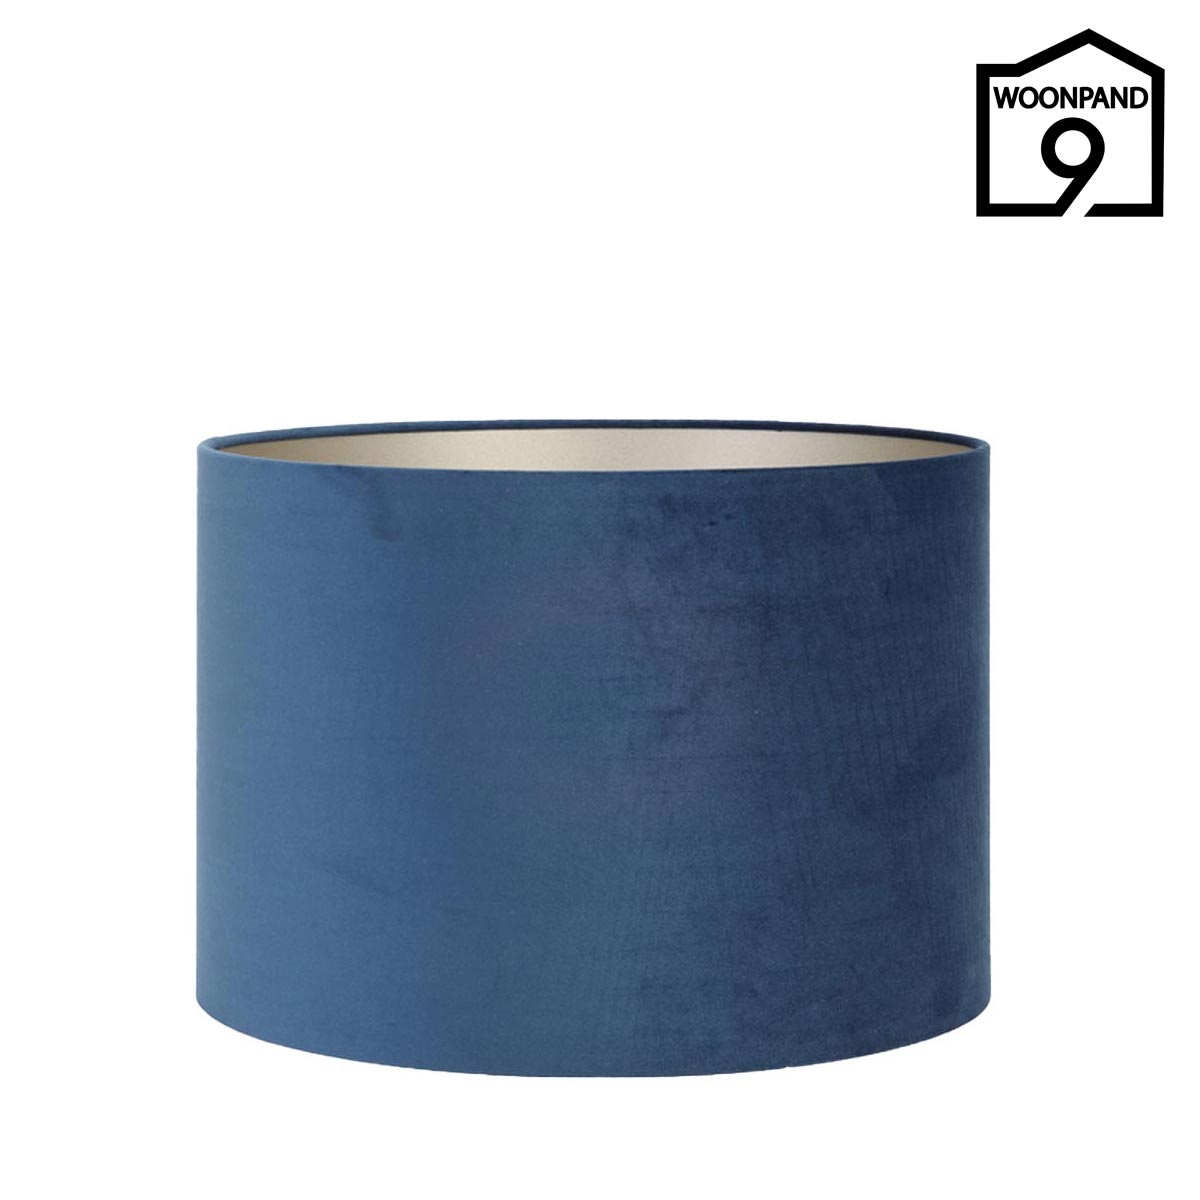 Uitvoerbaar voorkomen Mark Lampenkap velvet blauw 50cm rond by Light & Living - Woonpand 9